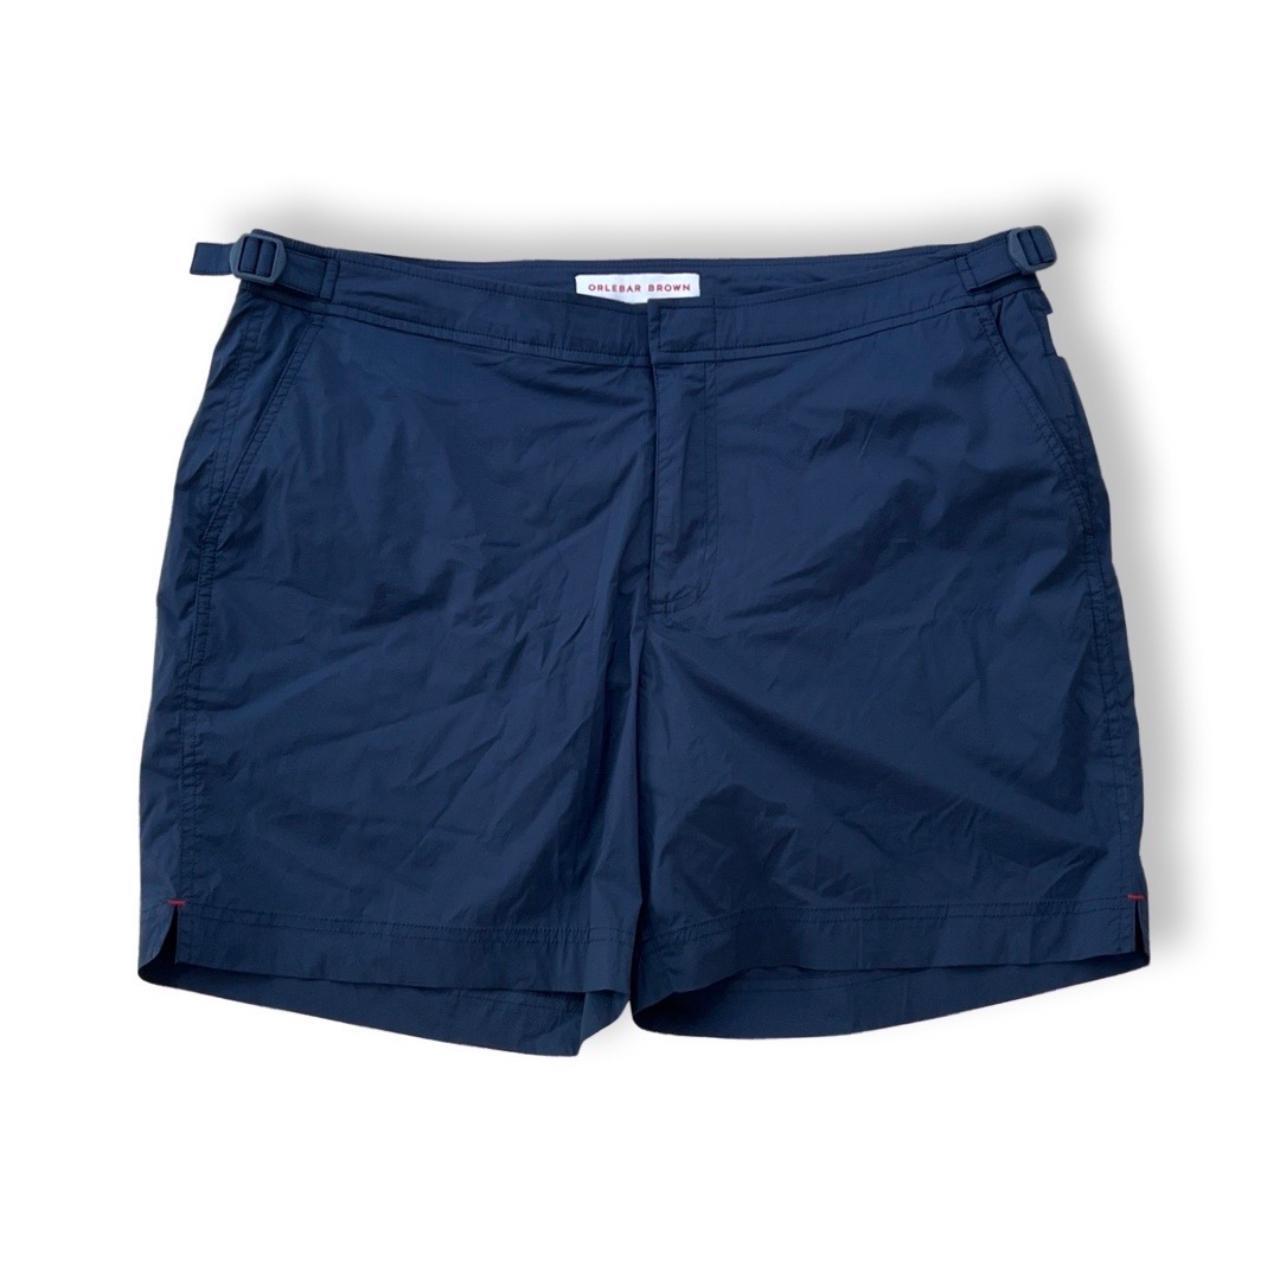 Orlebar Brown Men's Navy Swim-briefs-shorts